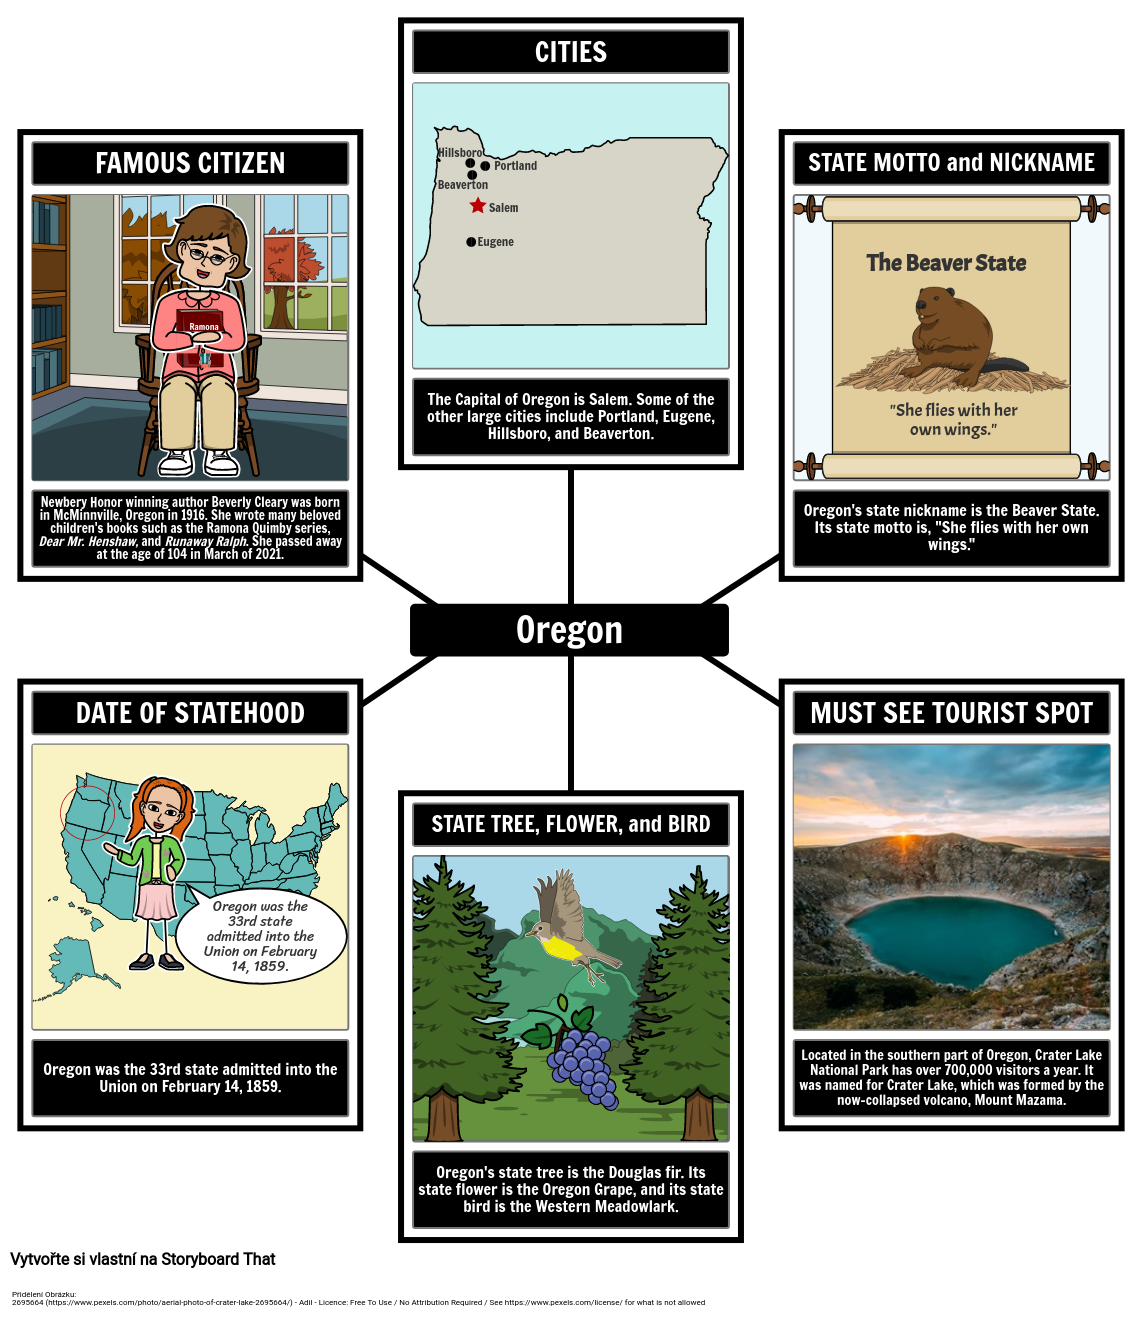 Fakta o Oregonu